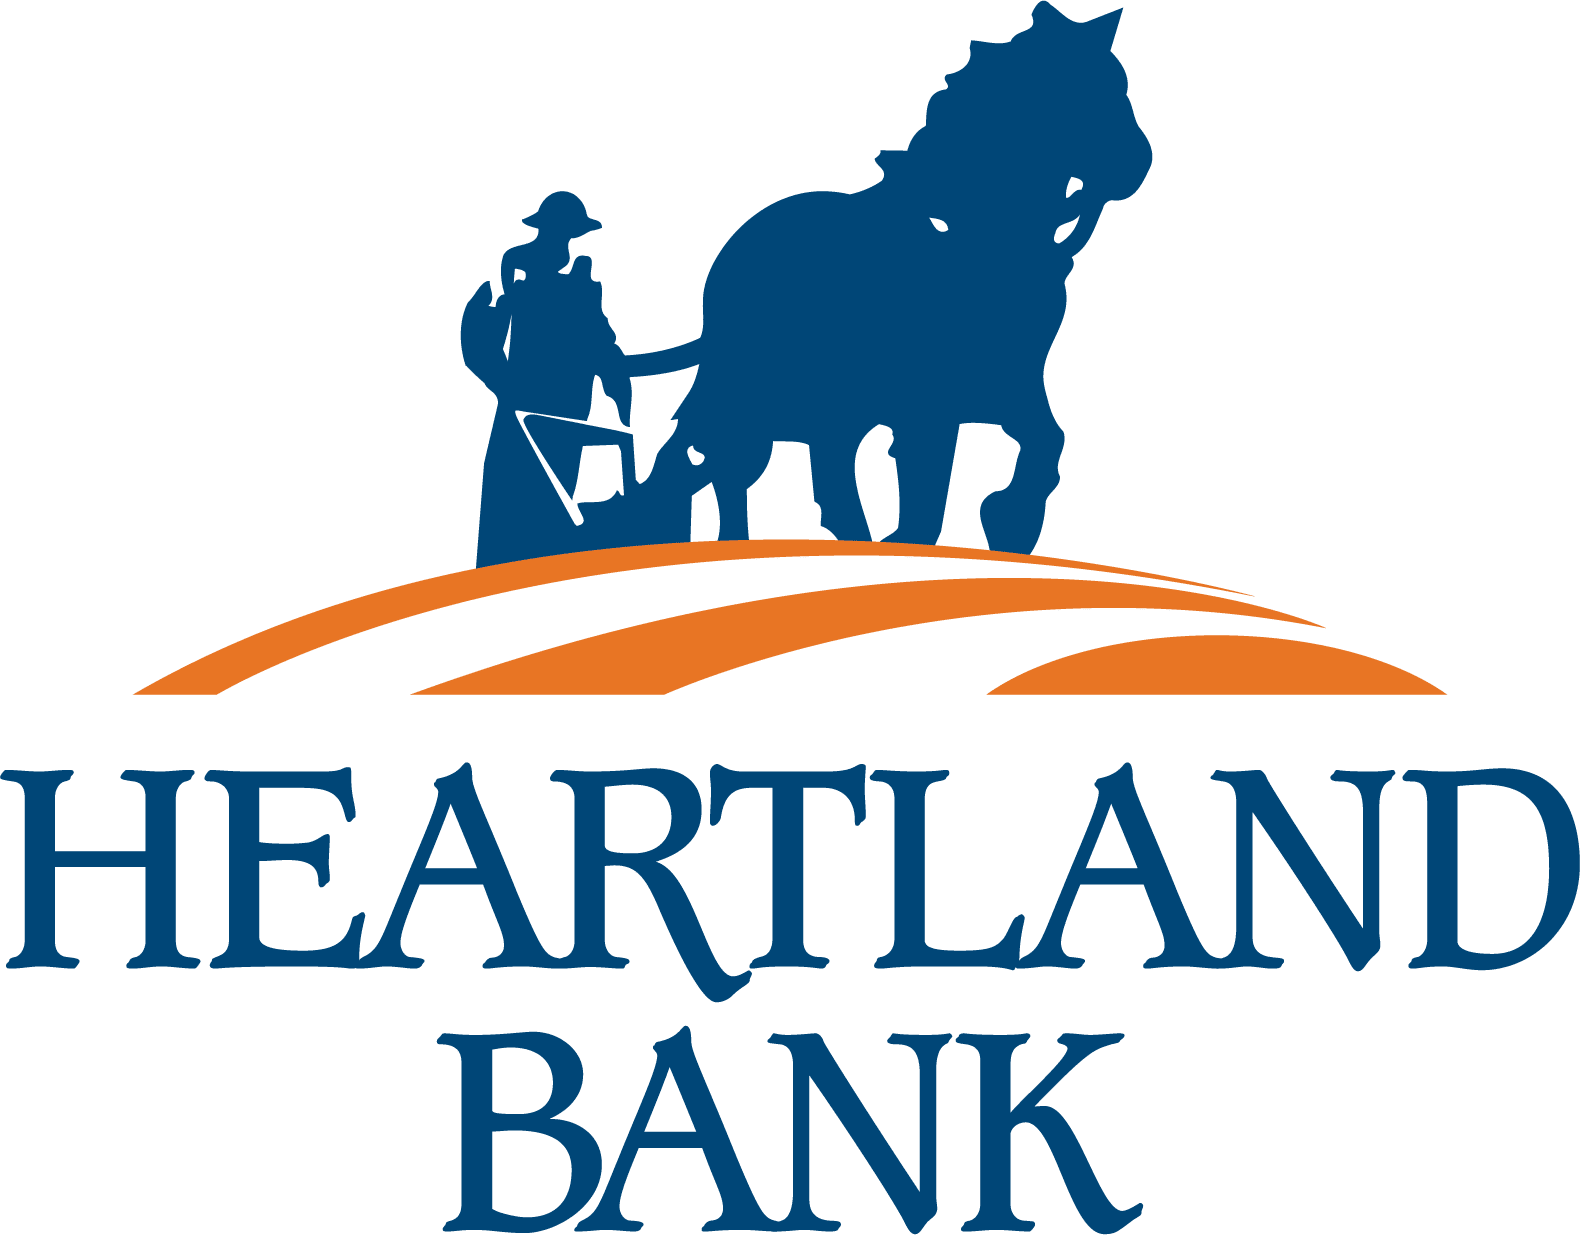 Heartland Computer  Better Business Bureau® Profile